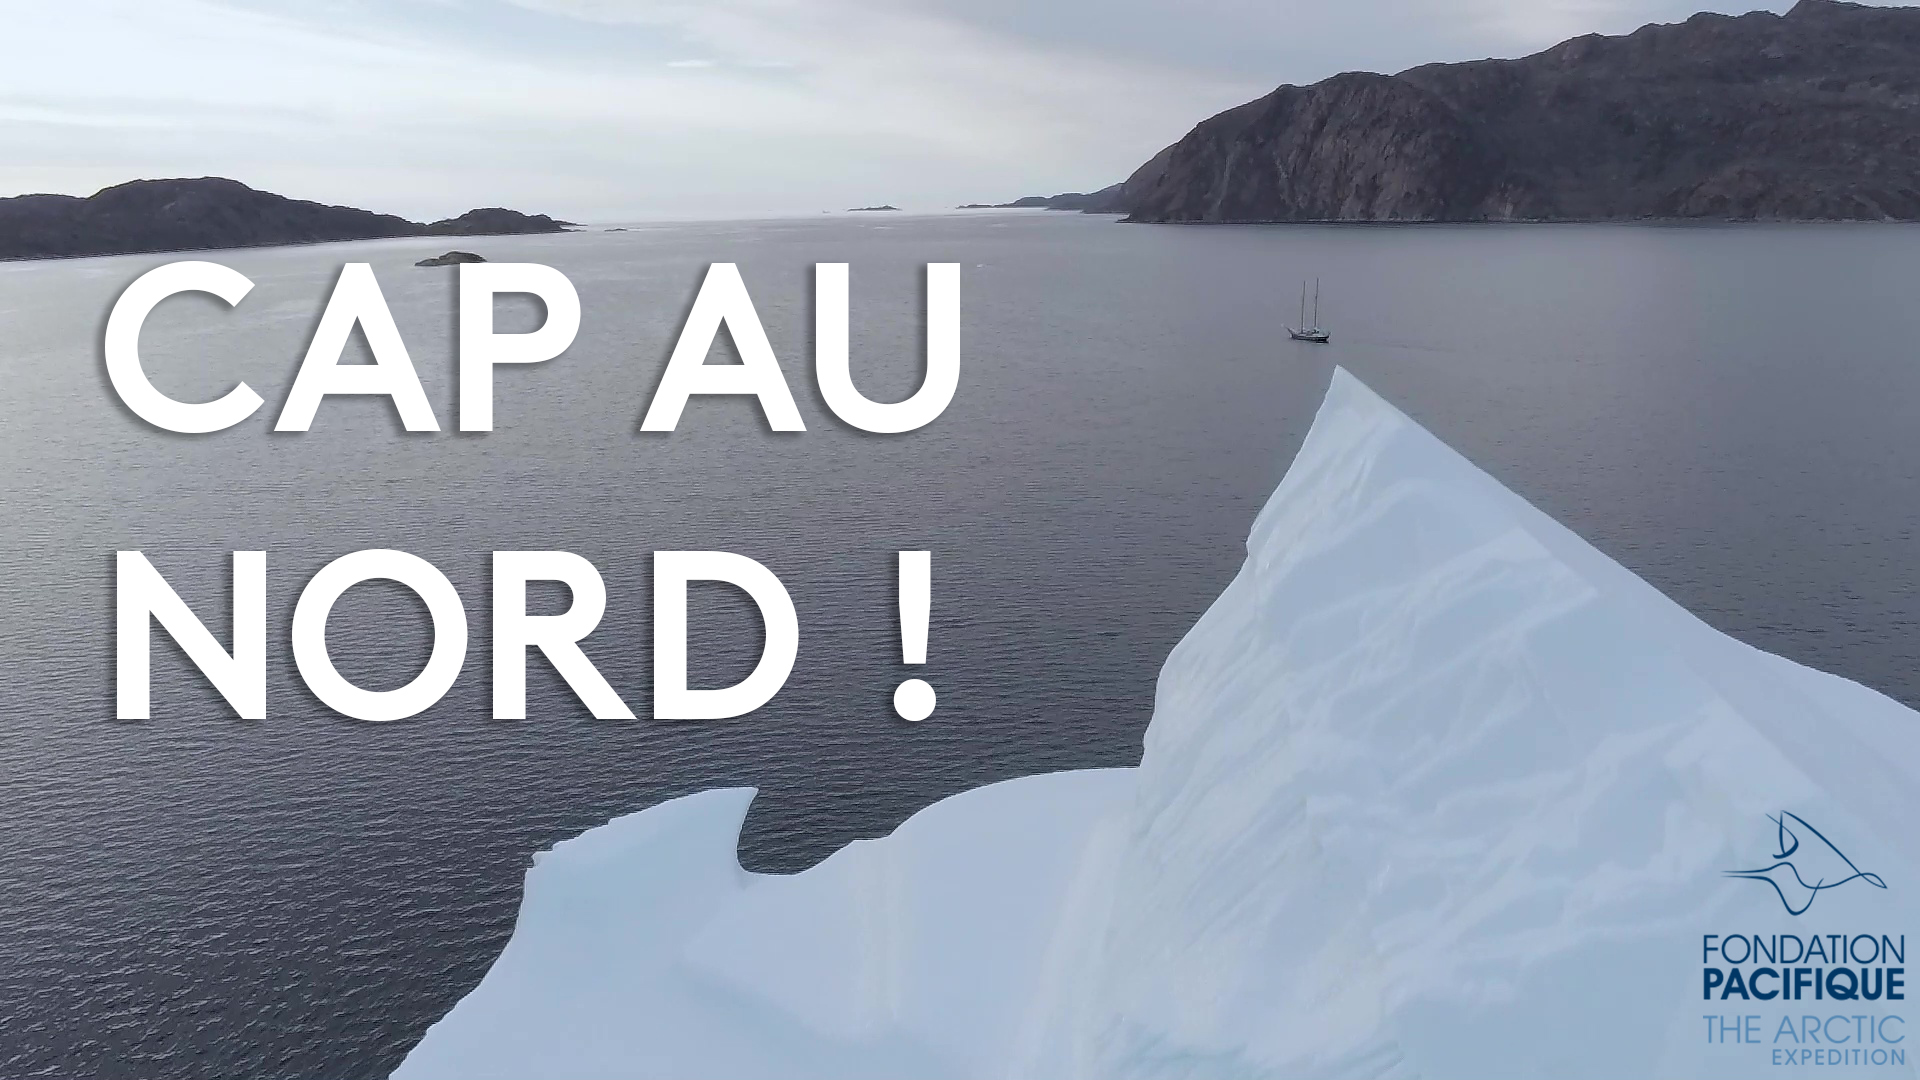 Cap au nord ! – Saison de navigation 2021 au Groenland en vidéo